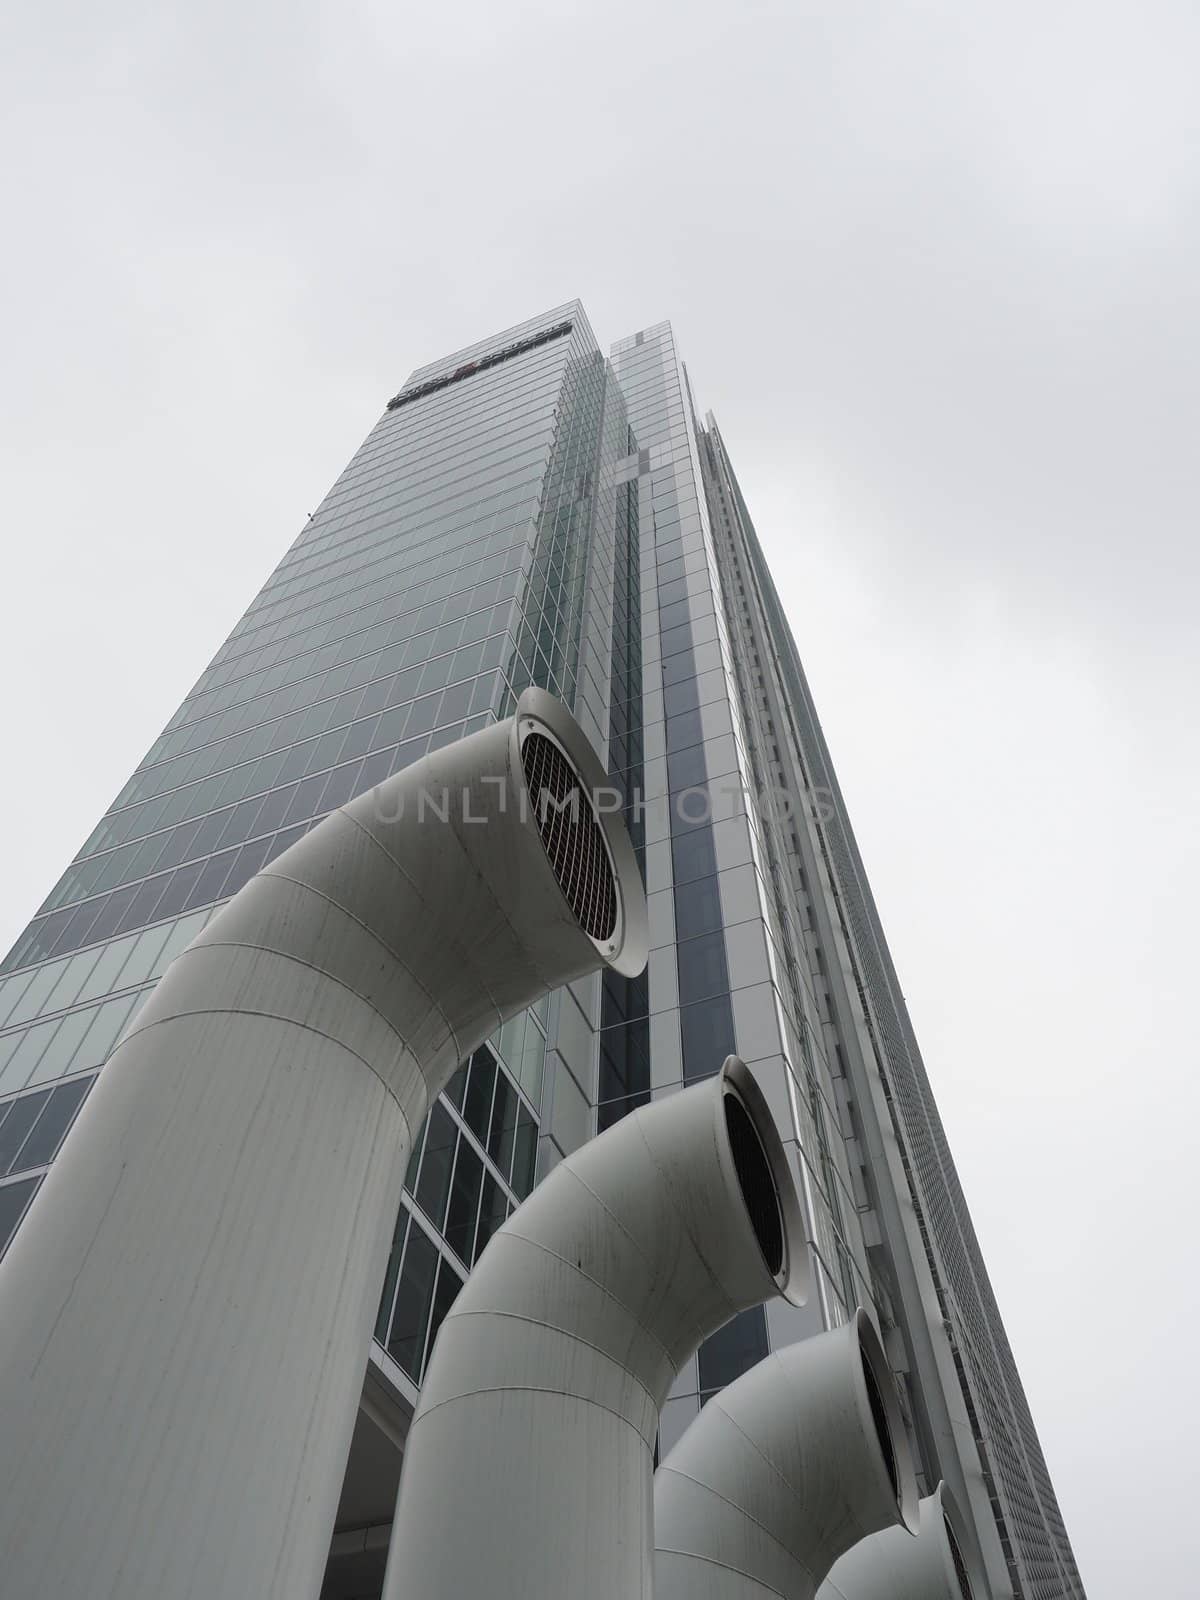 TURIN, ITALY - CIRCA DECEMBER 2019: Intesa San Paolo headquarters skyscraper designed by Renzo Piano